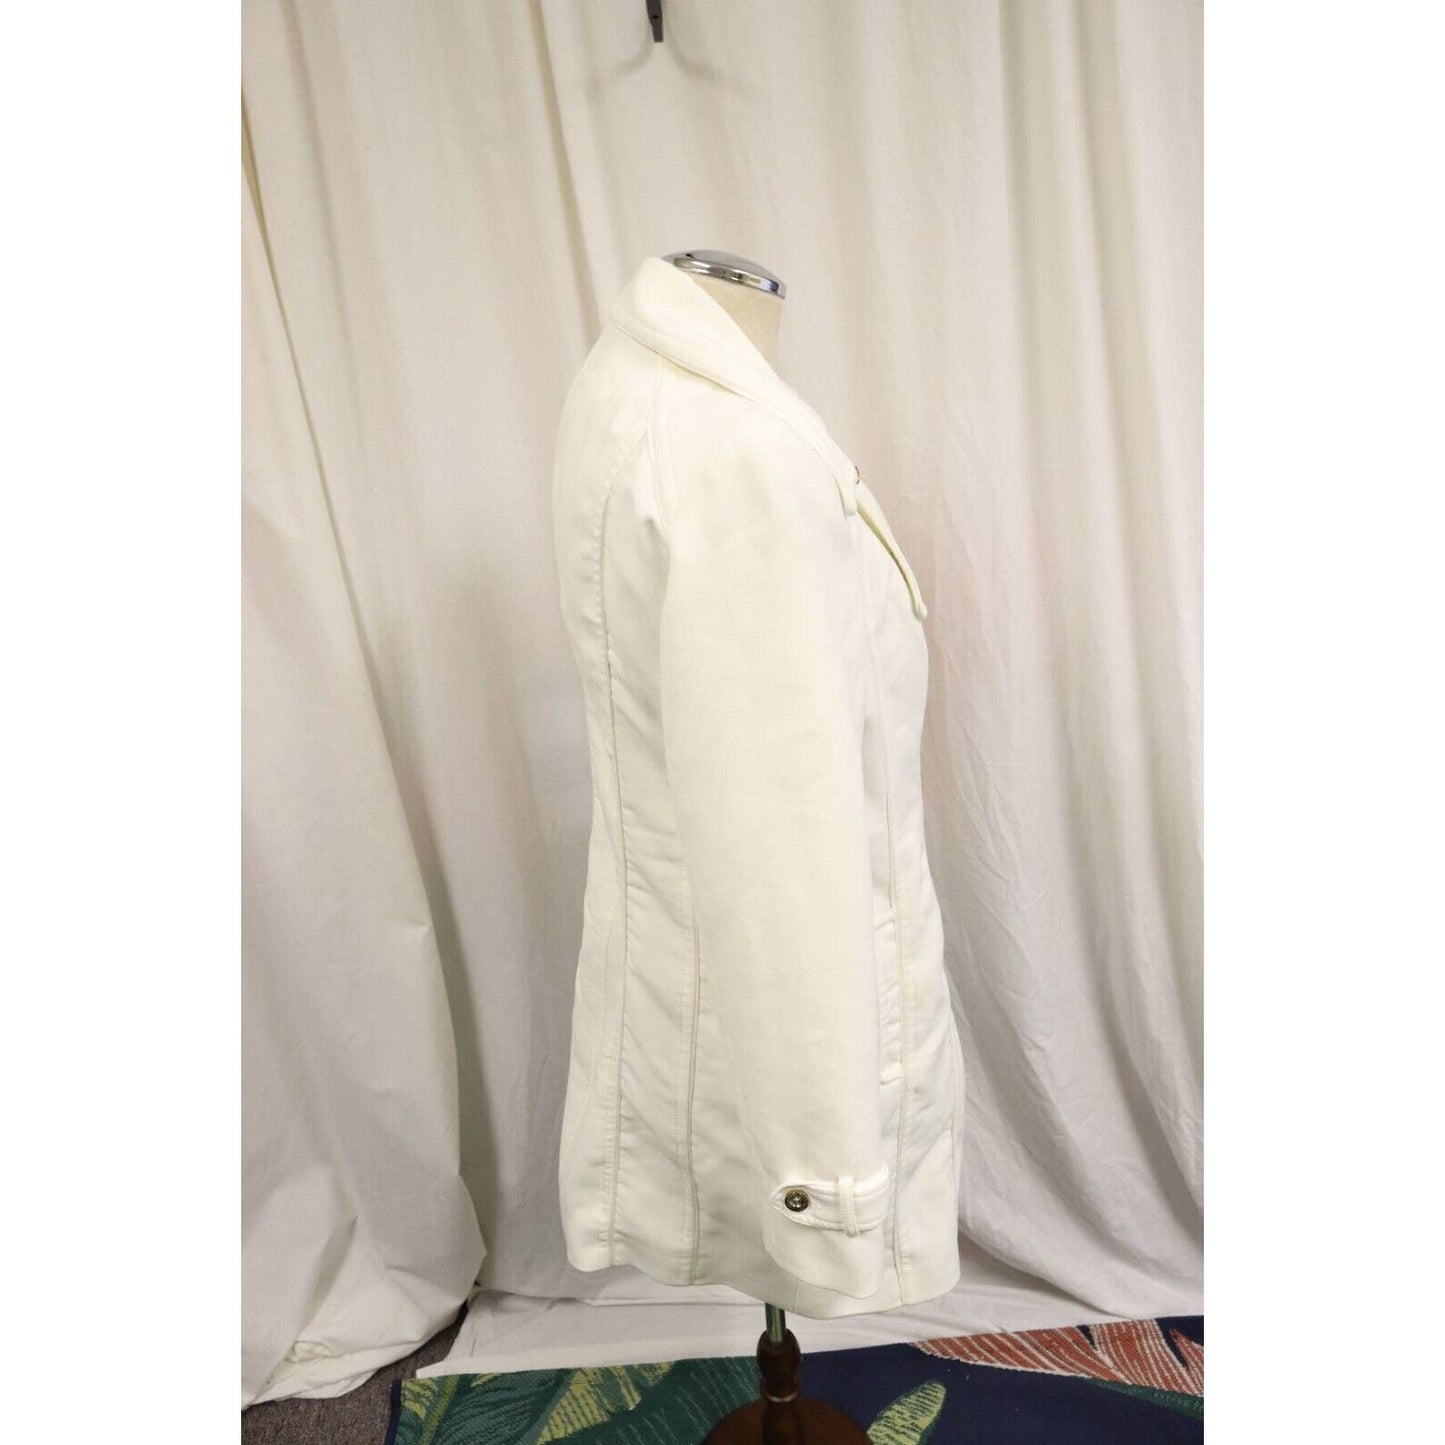 White house black market white jacket size Medium peacoat (K)